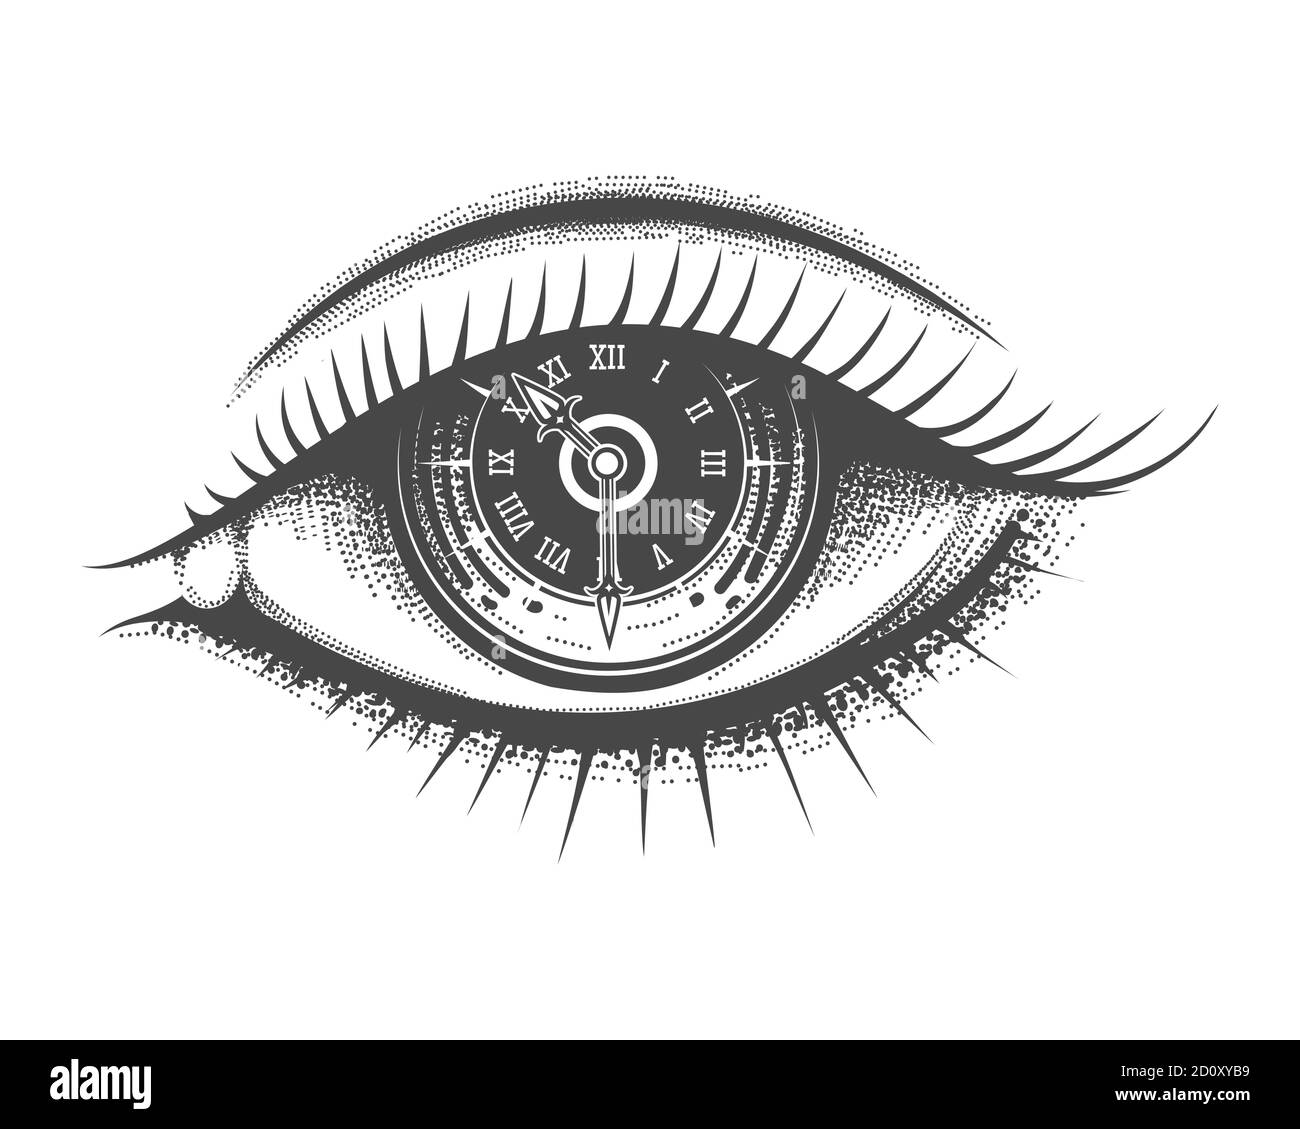 Occhio umano disegnato a mano con quadrante dell'orologio all'interno della pupilla. Illustrazione vettoriale. Illustrazione Vettoriale